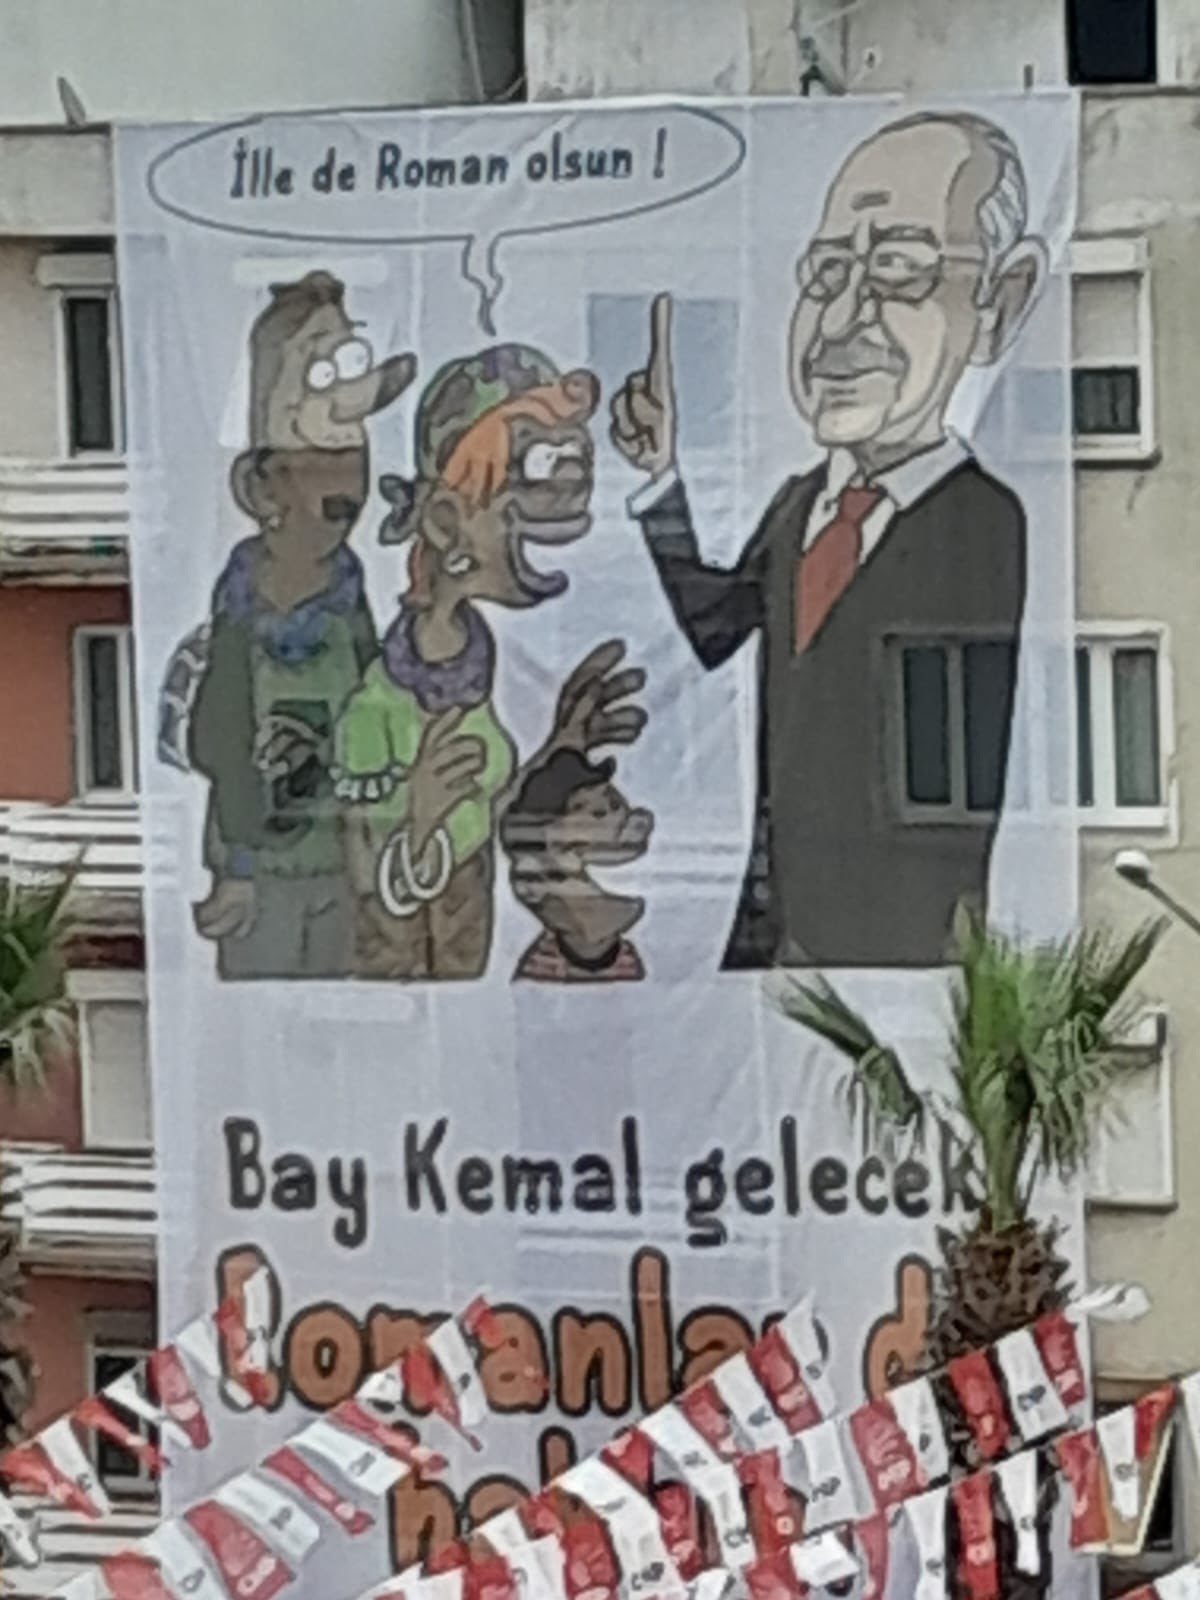 AK Partili Bekle’den CHP’nin Menemen’de açtığı Roman karikatürüne tepki